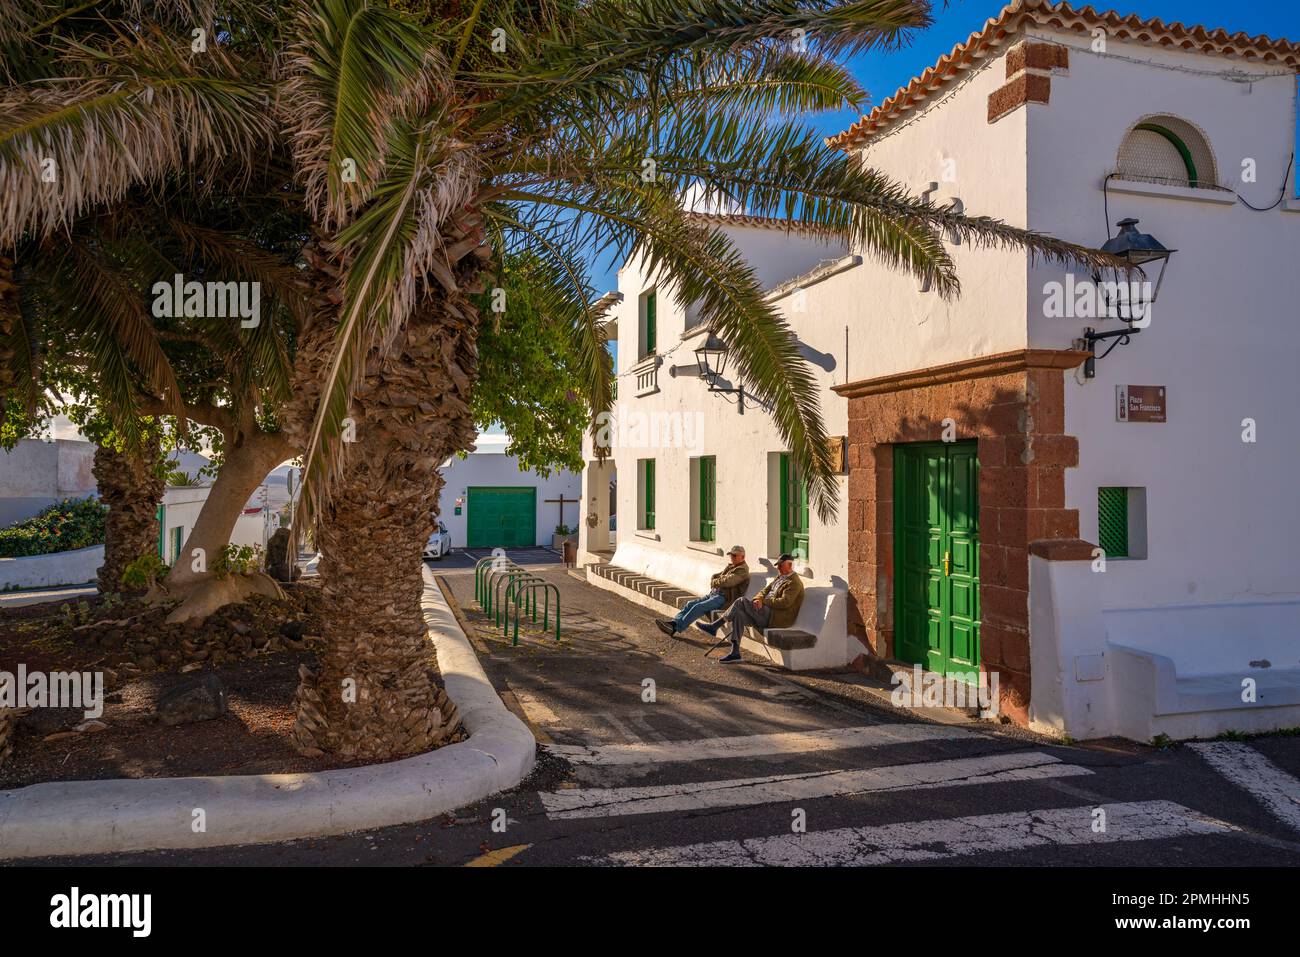 Vista della gente del posto e l'architettura, Teguise, Lanzarote, Las Palmas, Isole Canarie, Spagna, Atlantico, Europa Foto Stock